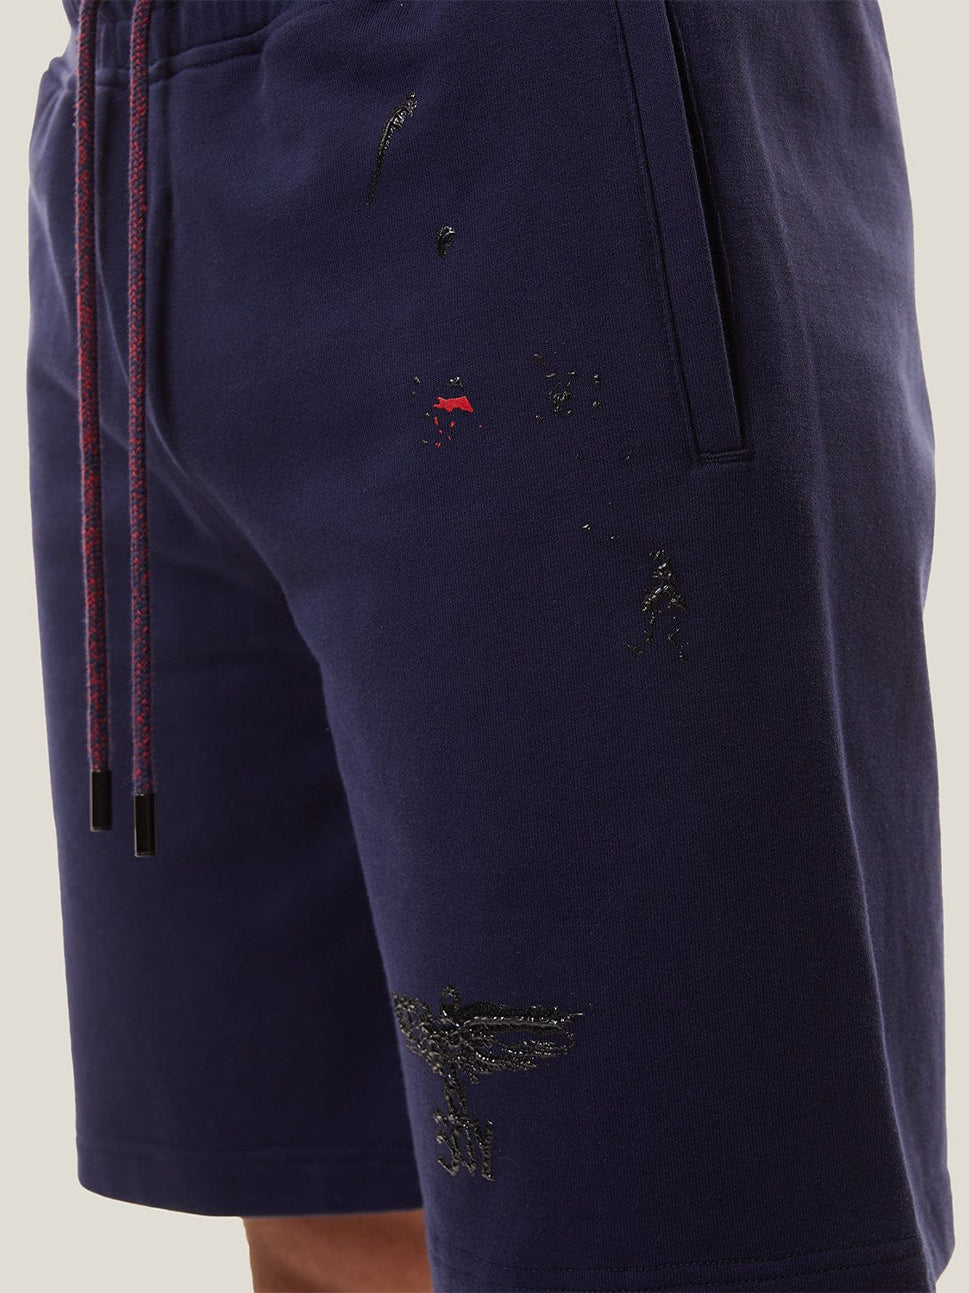 Boy London Tint Navy Shorts